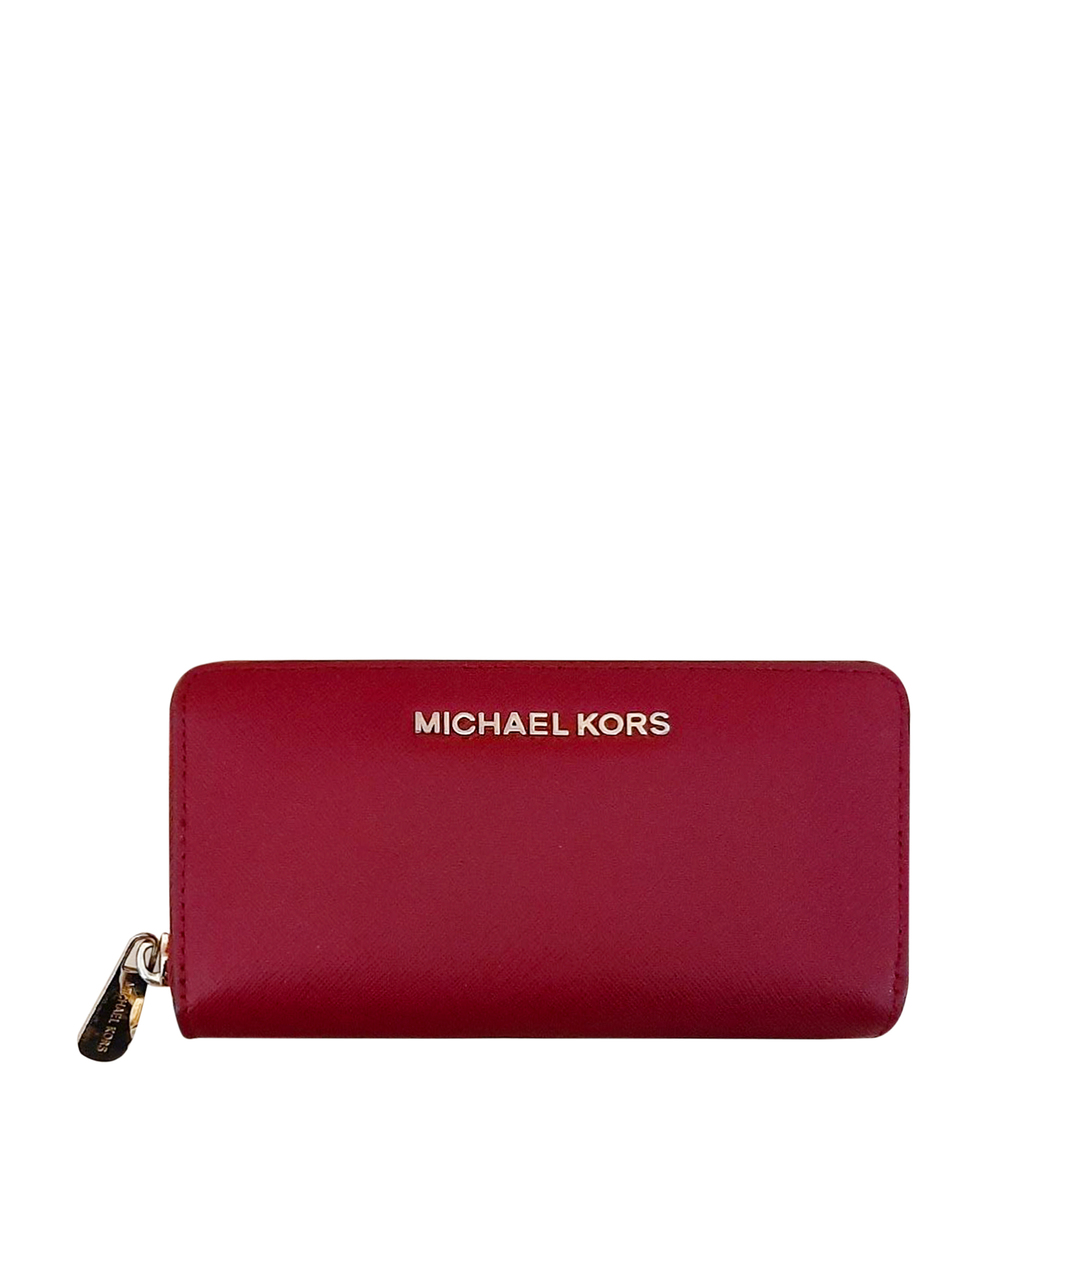 MICHAEL KORS Бордовый кожаный кошелек, фото 1